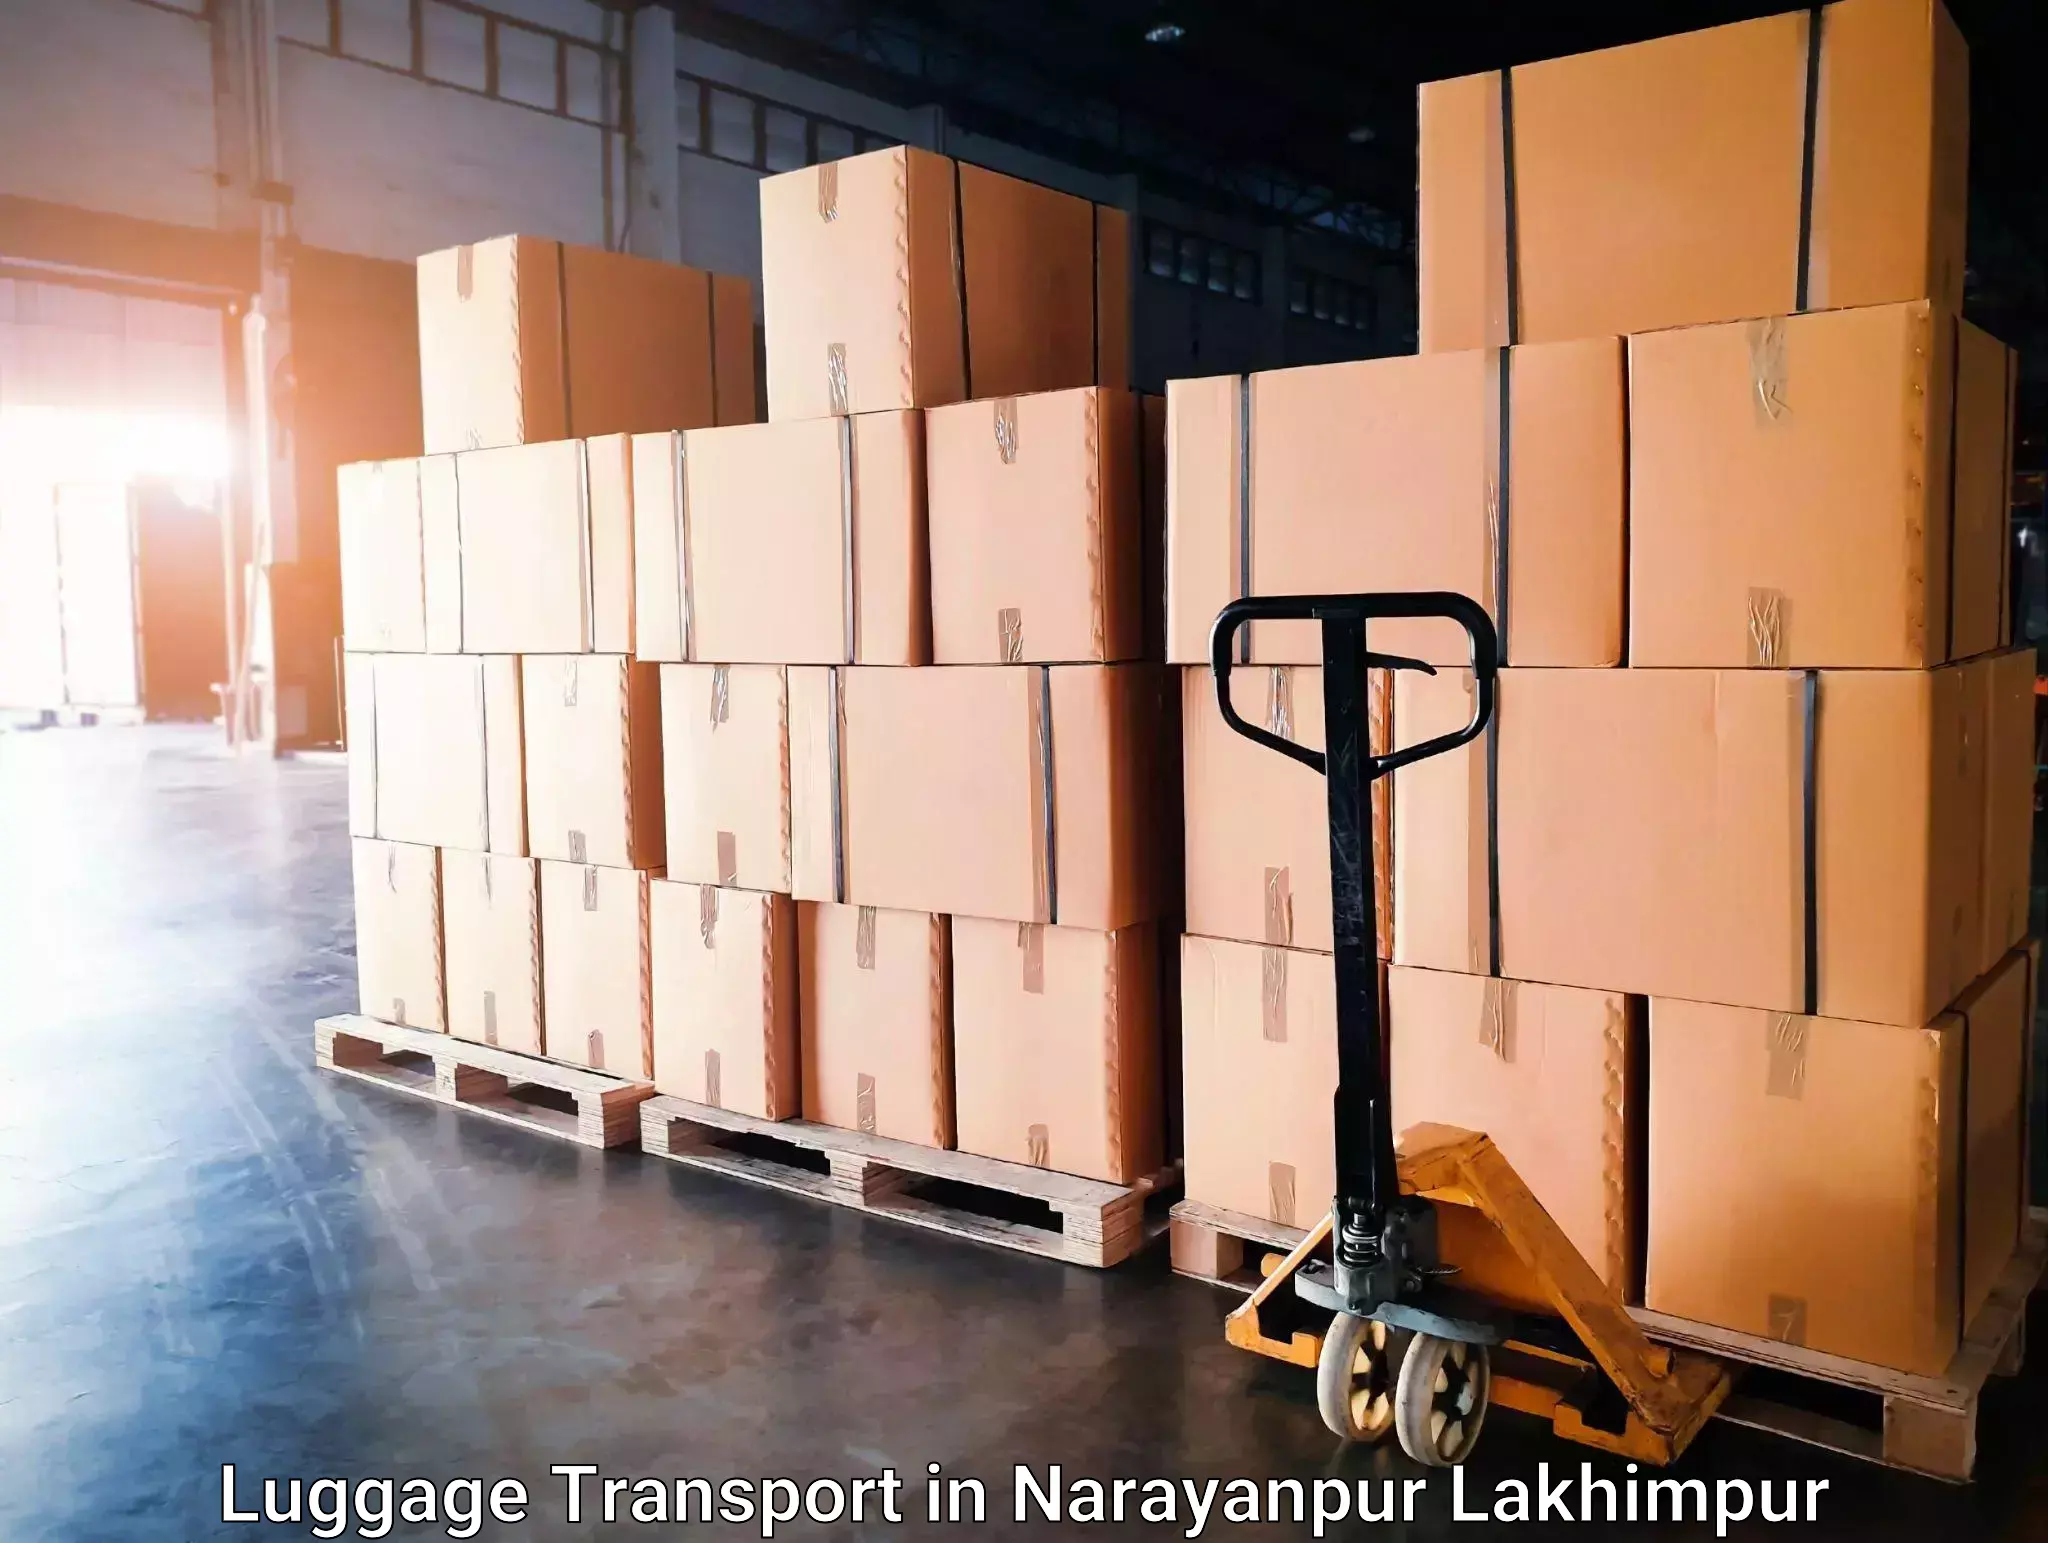 Baggage transport updates in Narayanpur Lakhimpur